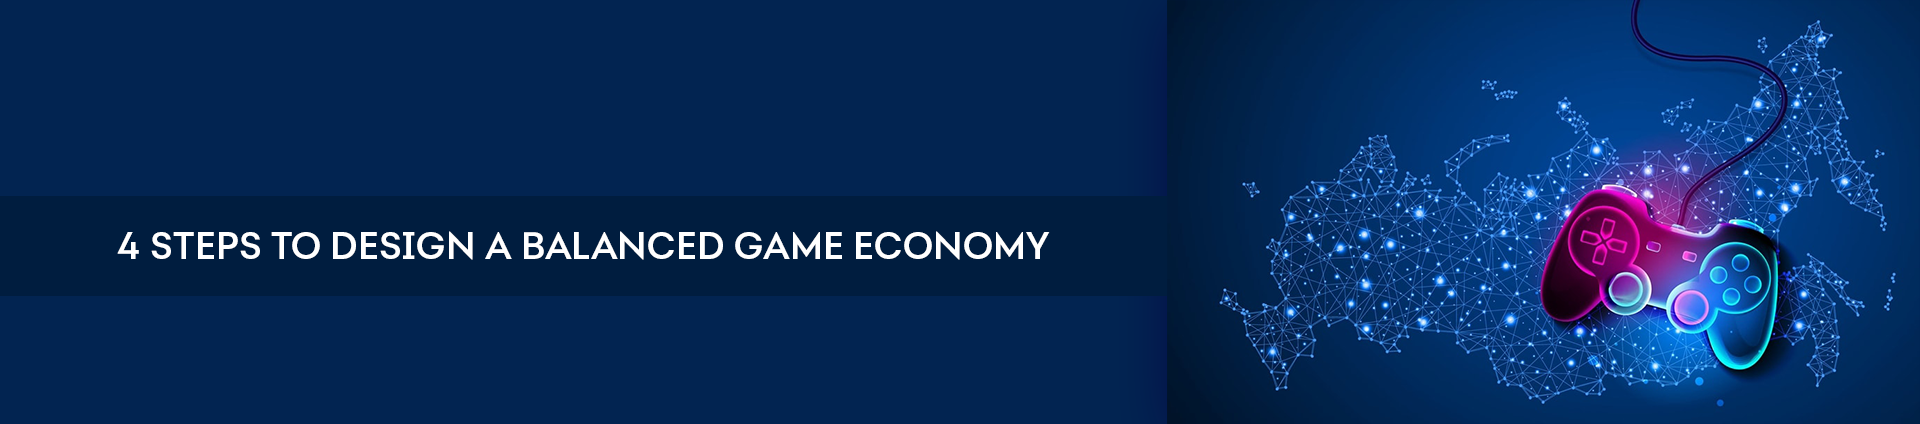 Steps to Design Balanced Game Economy